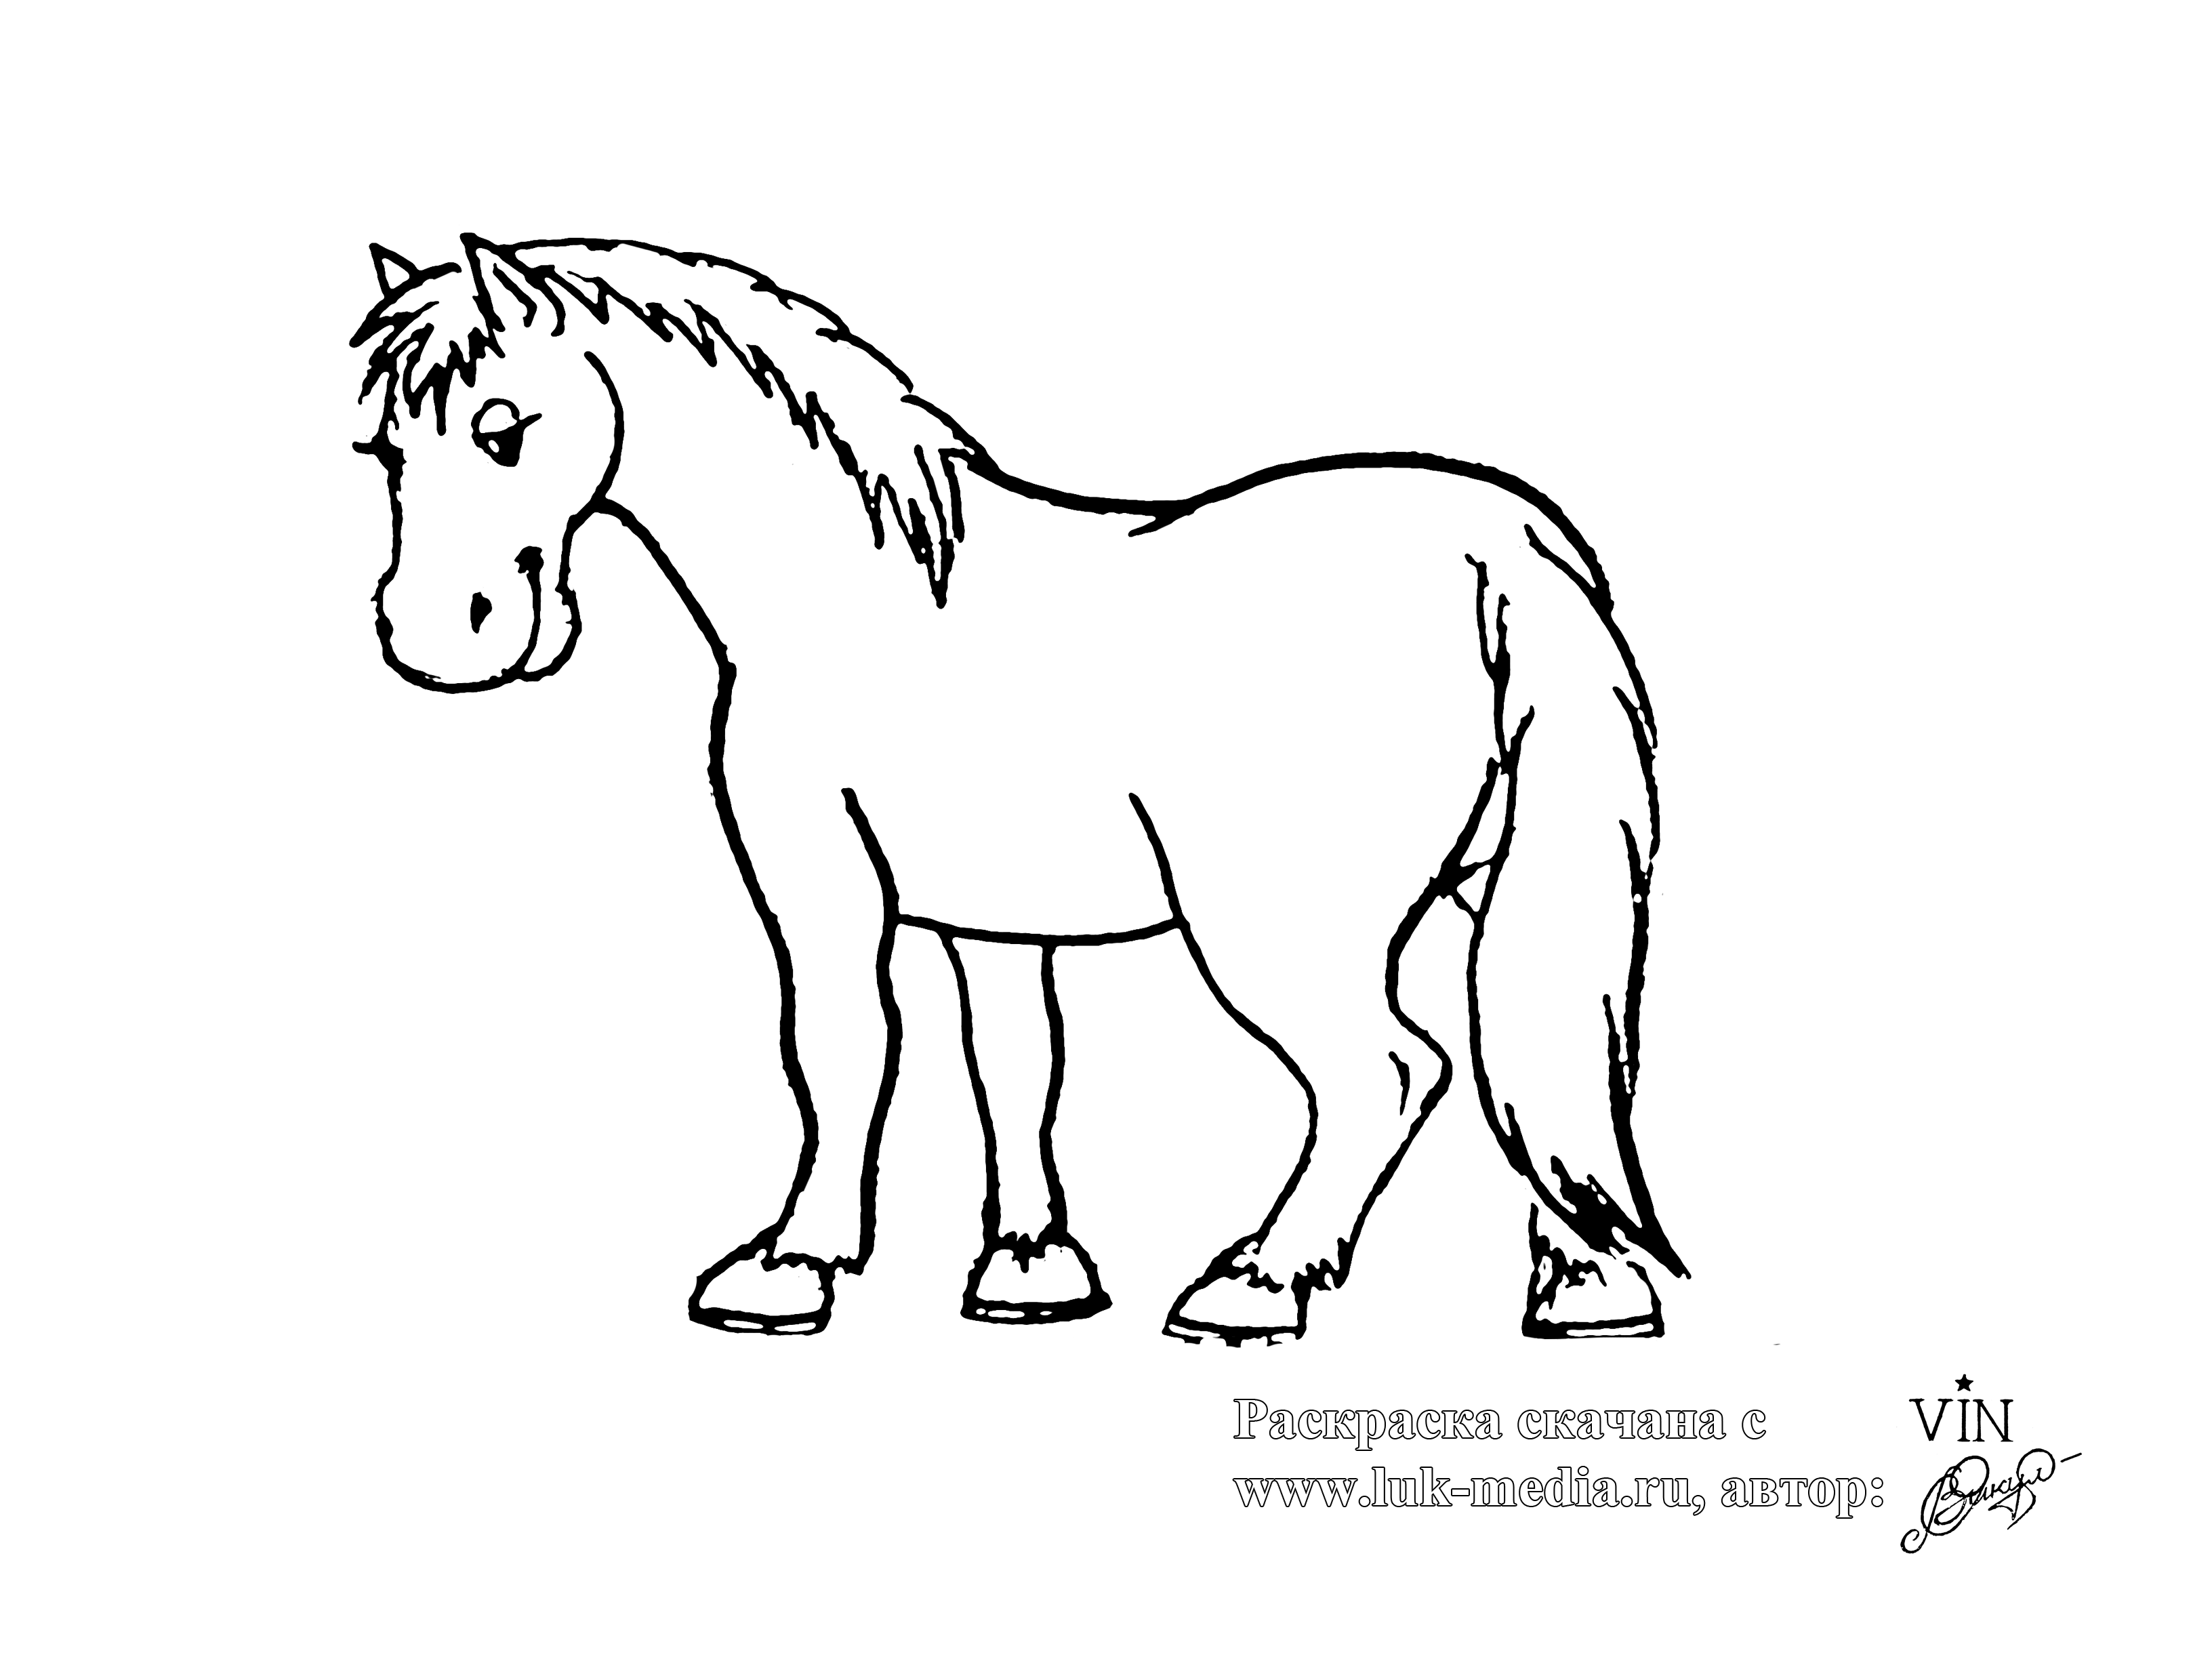 Раскрашиваем лошадку. Раскраска. Лошадка. Лошадка раскраска для детей. Конь раскраска для детей. Лошадь картинка для детей раскраска.